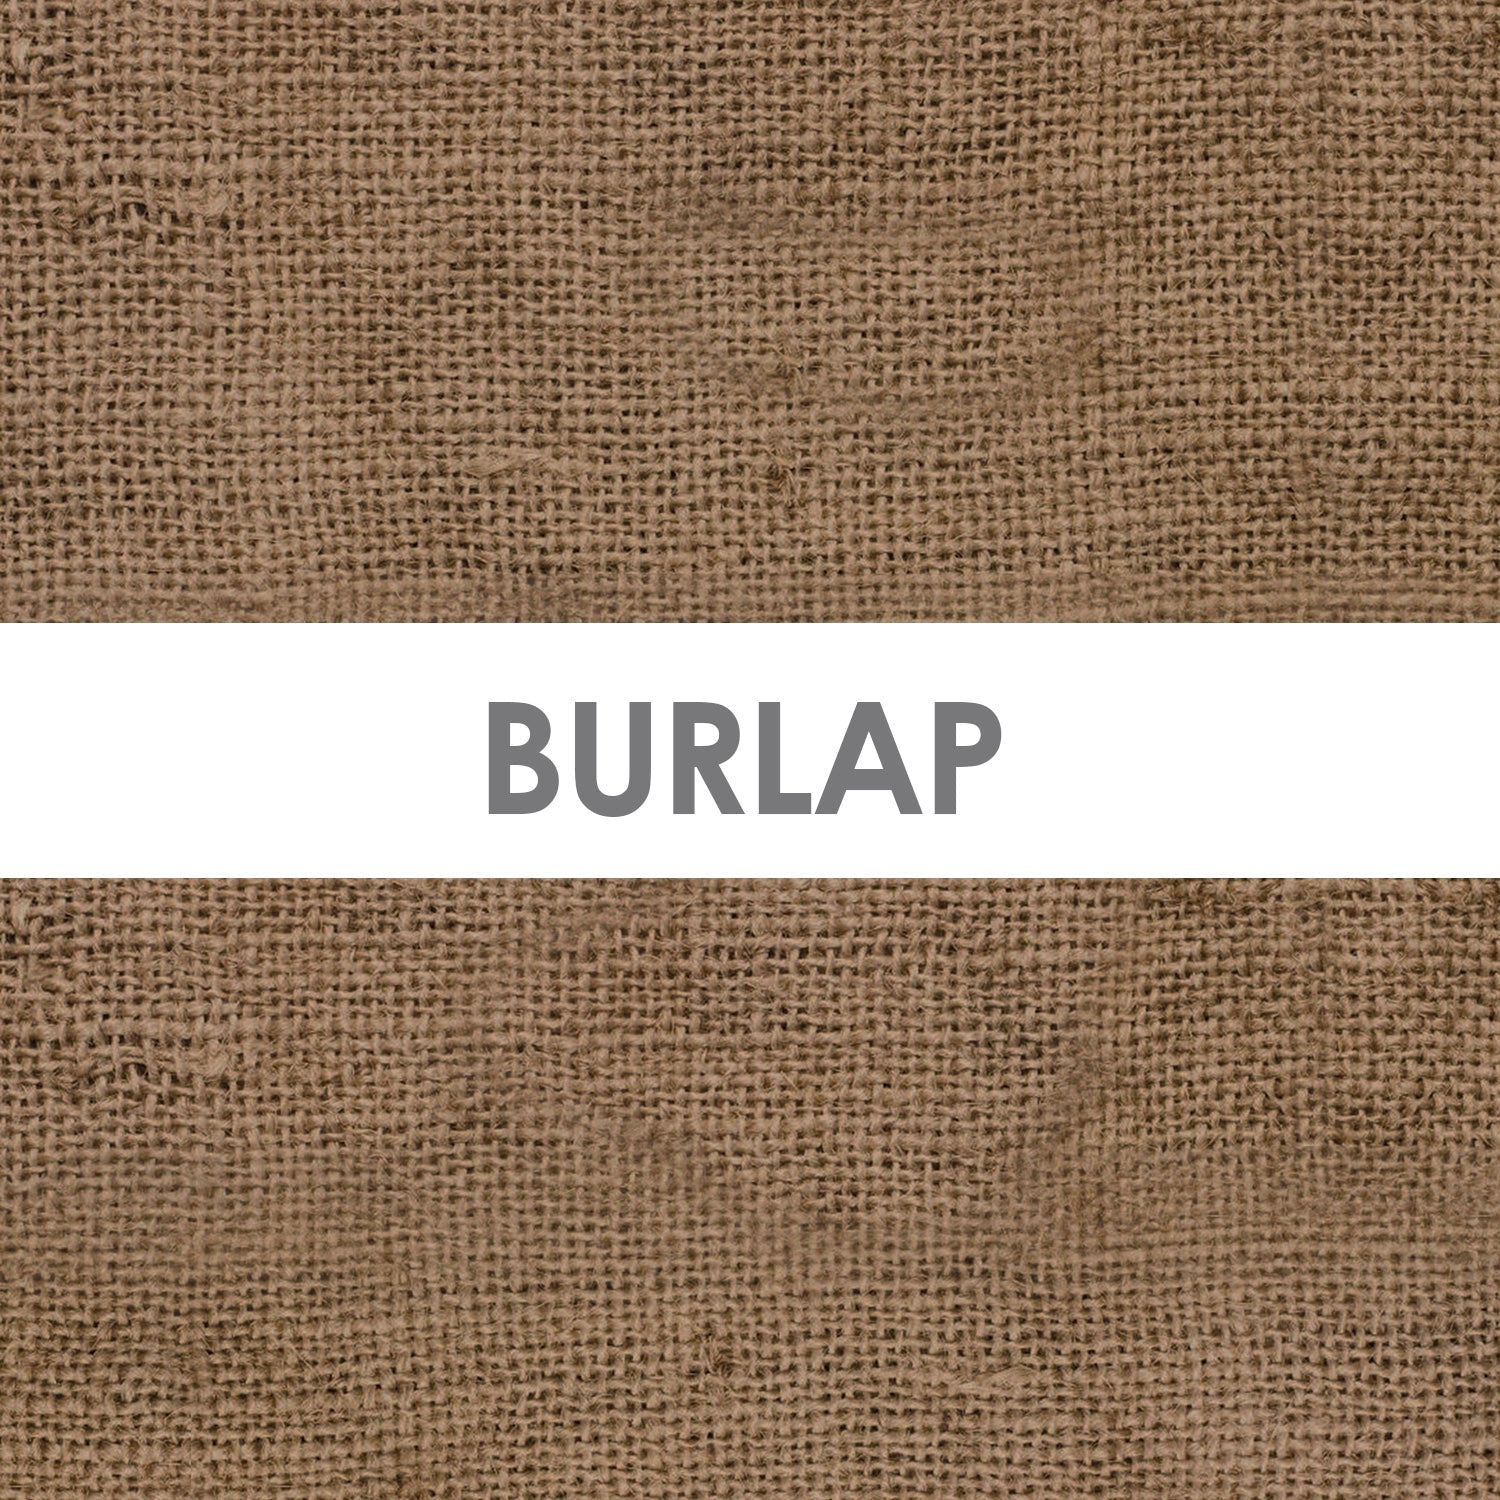 Burlap Fabric - 100% Cotton